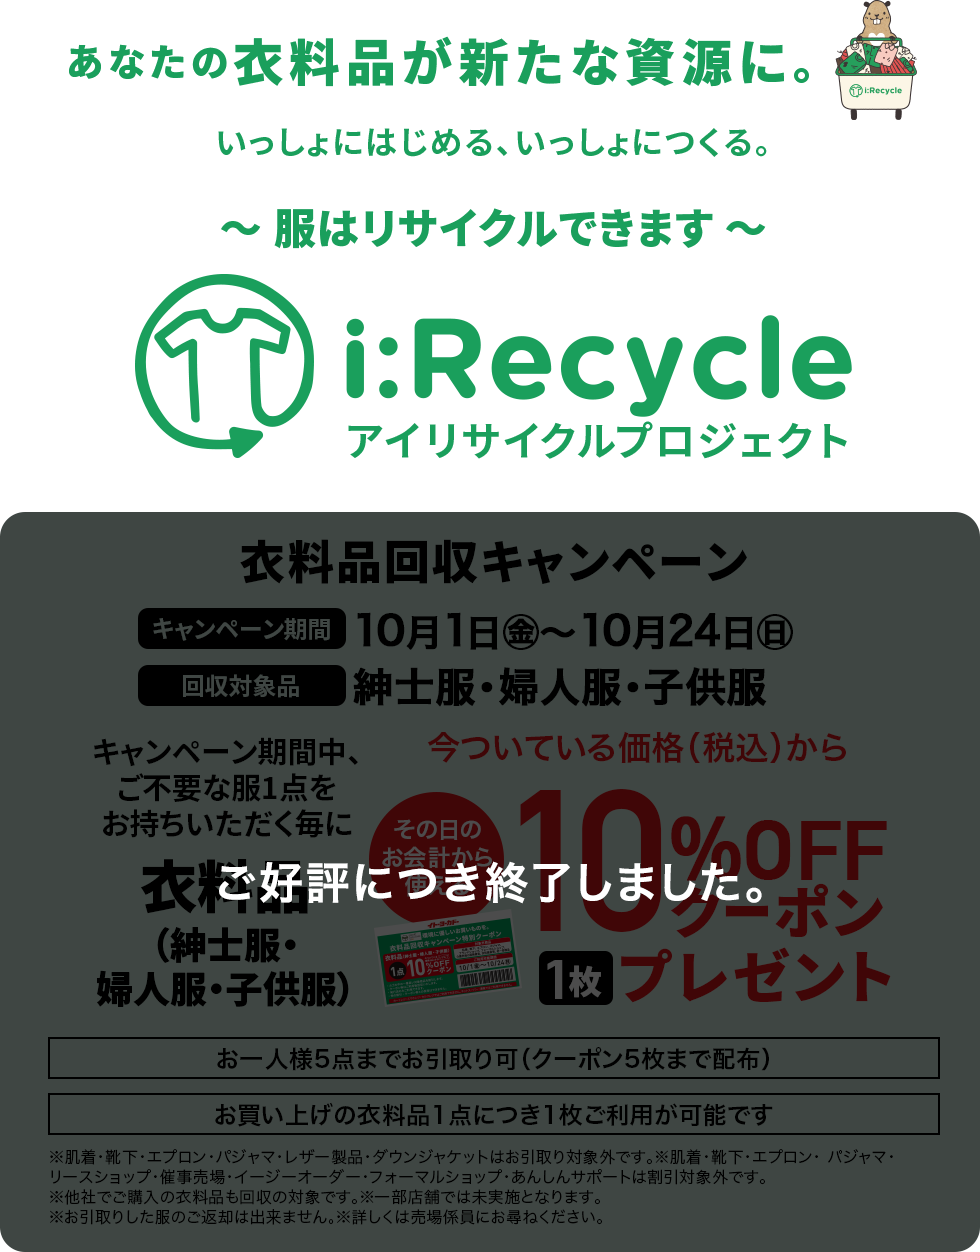 アイリサイクルプロジェクト